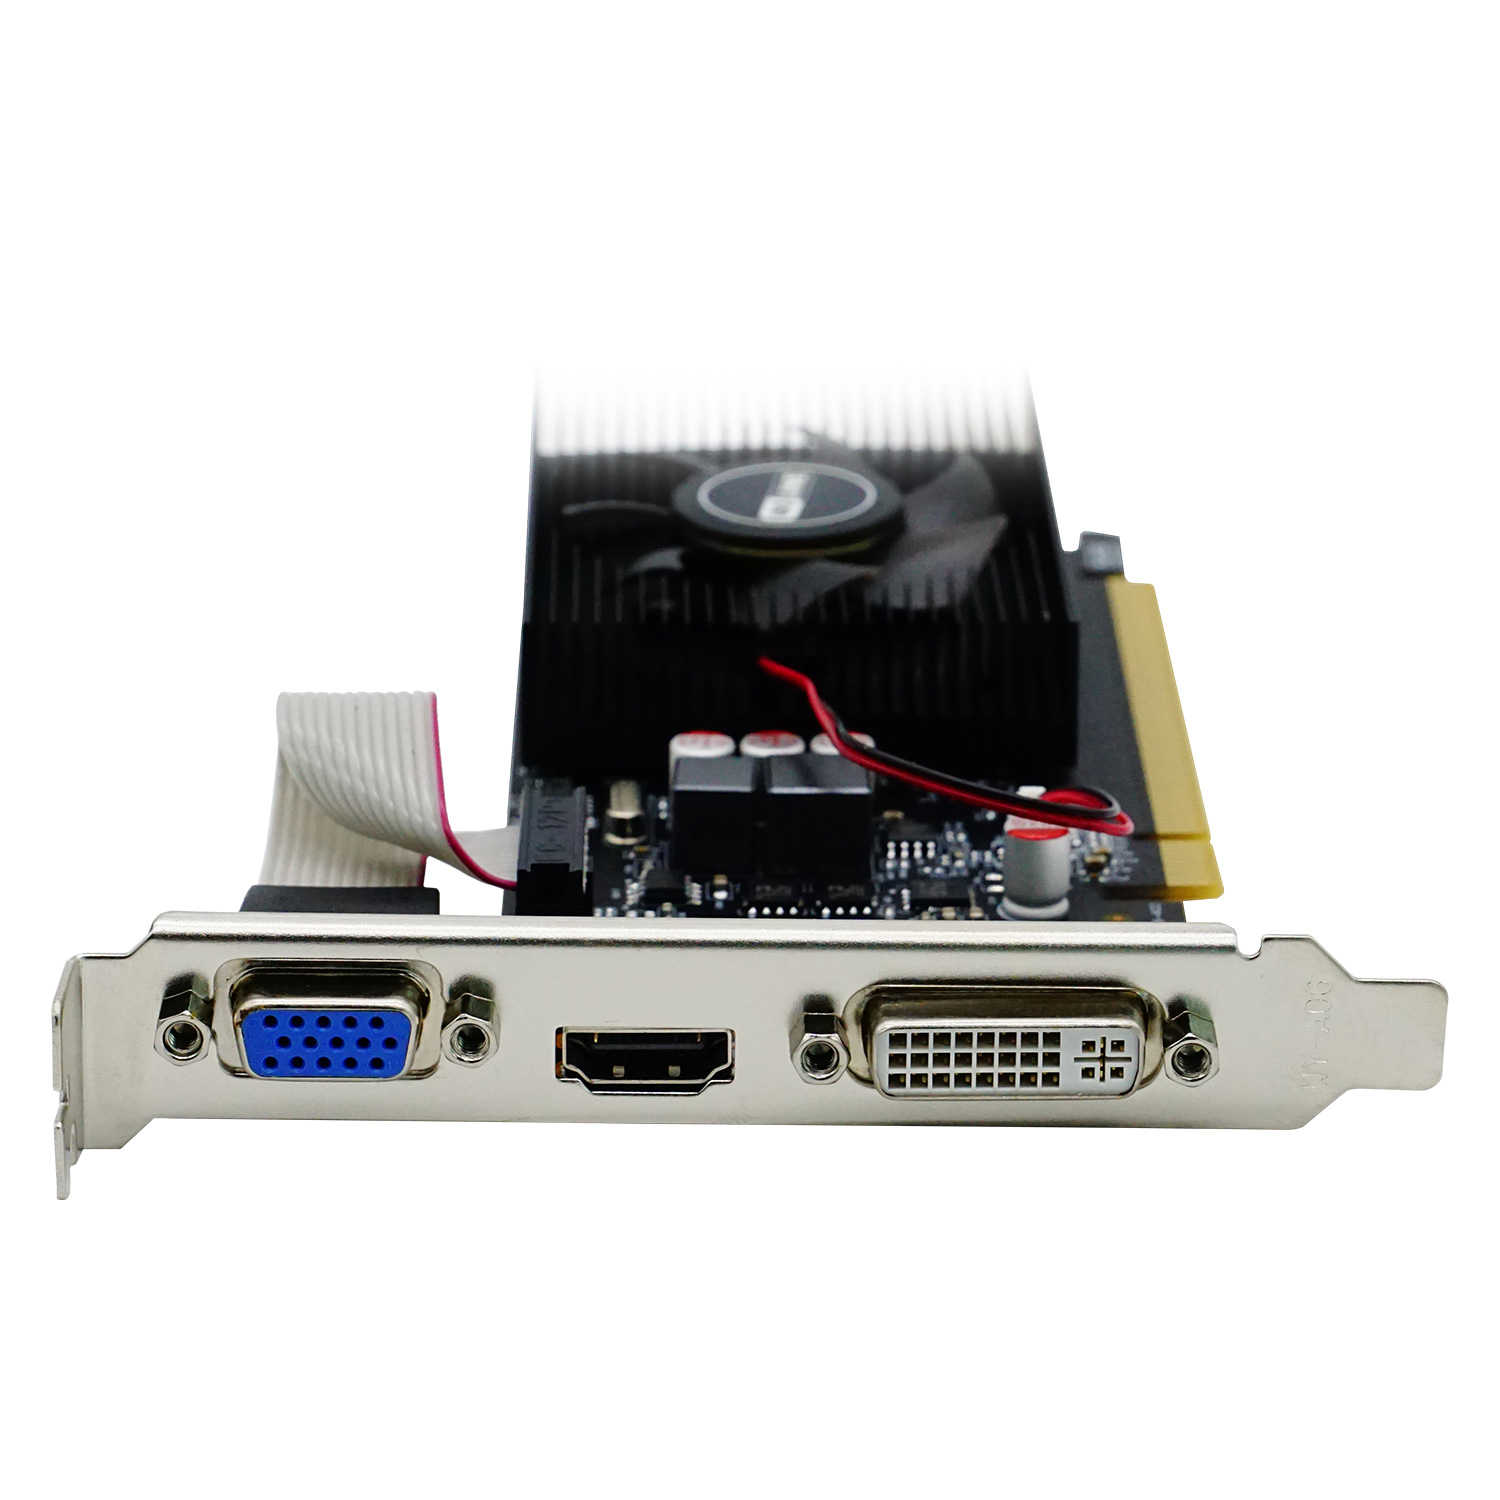 Placa de Vídeo Goline NVIDIA GeForce GL-GT220 1GB DDR3 - GL-GT220-1GB-D3 (1 Ano de Garantia)